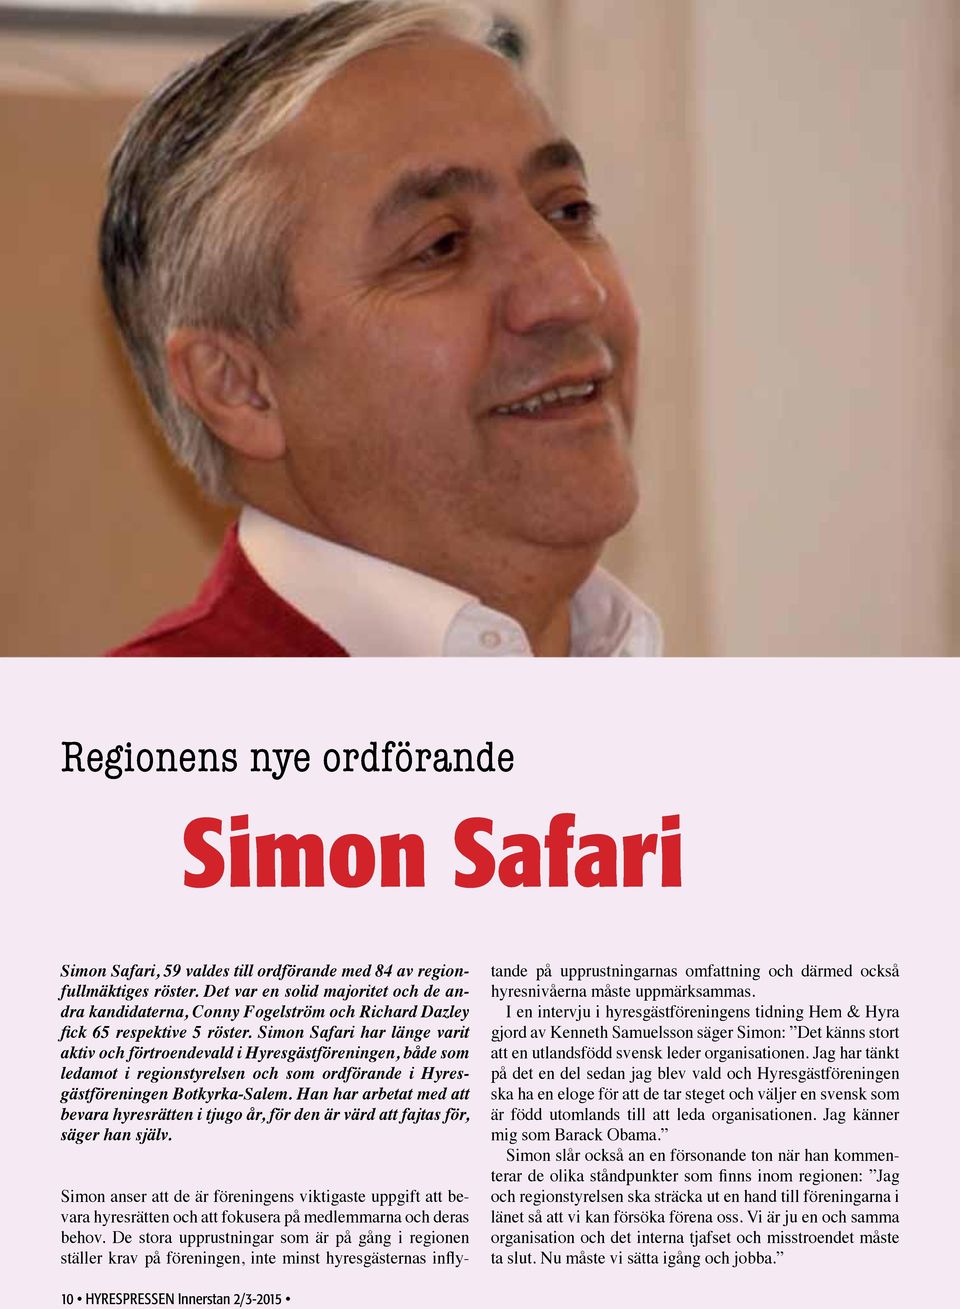 Simon Safari har länge varit aktiv och förtroendevald i Hyresgästföreningen, både som ledamot i regionstyrelsen och som ordförande i Hyresgästföreningen Botkyrka-Salem.